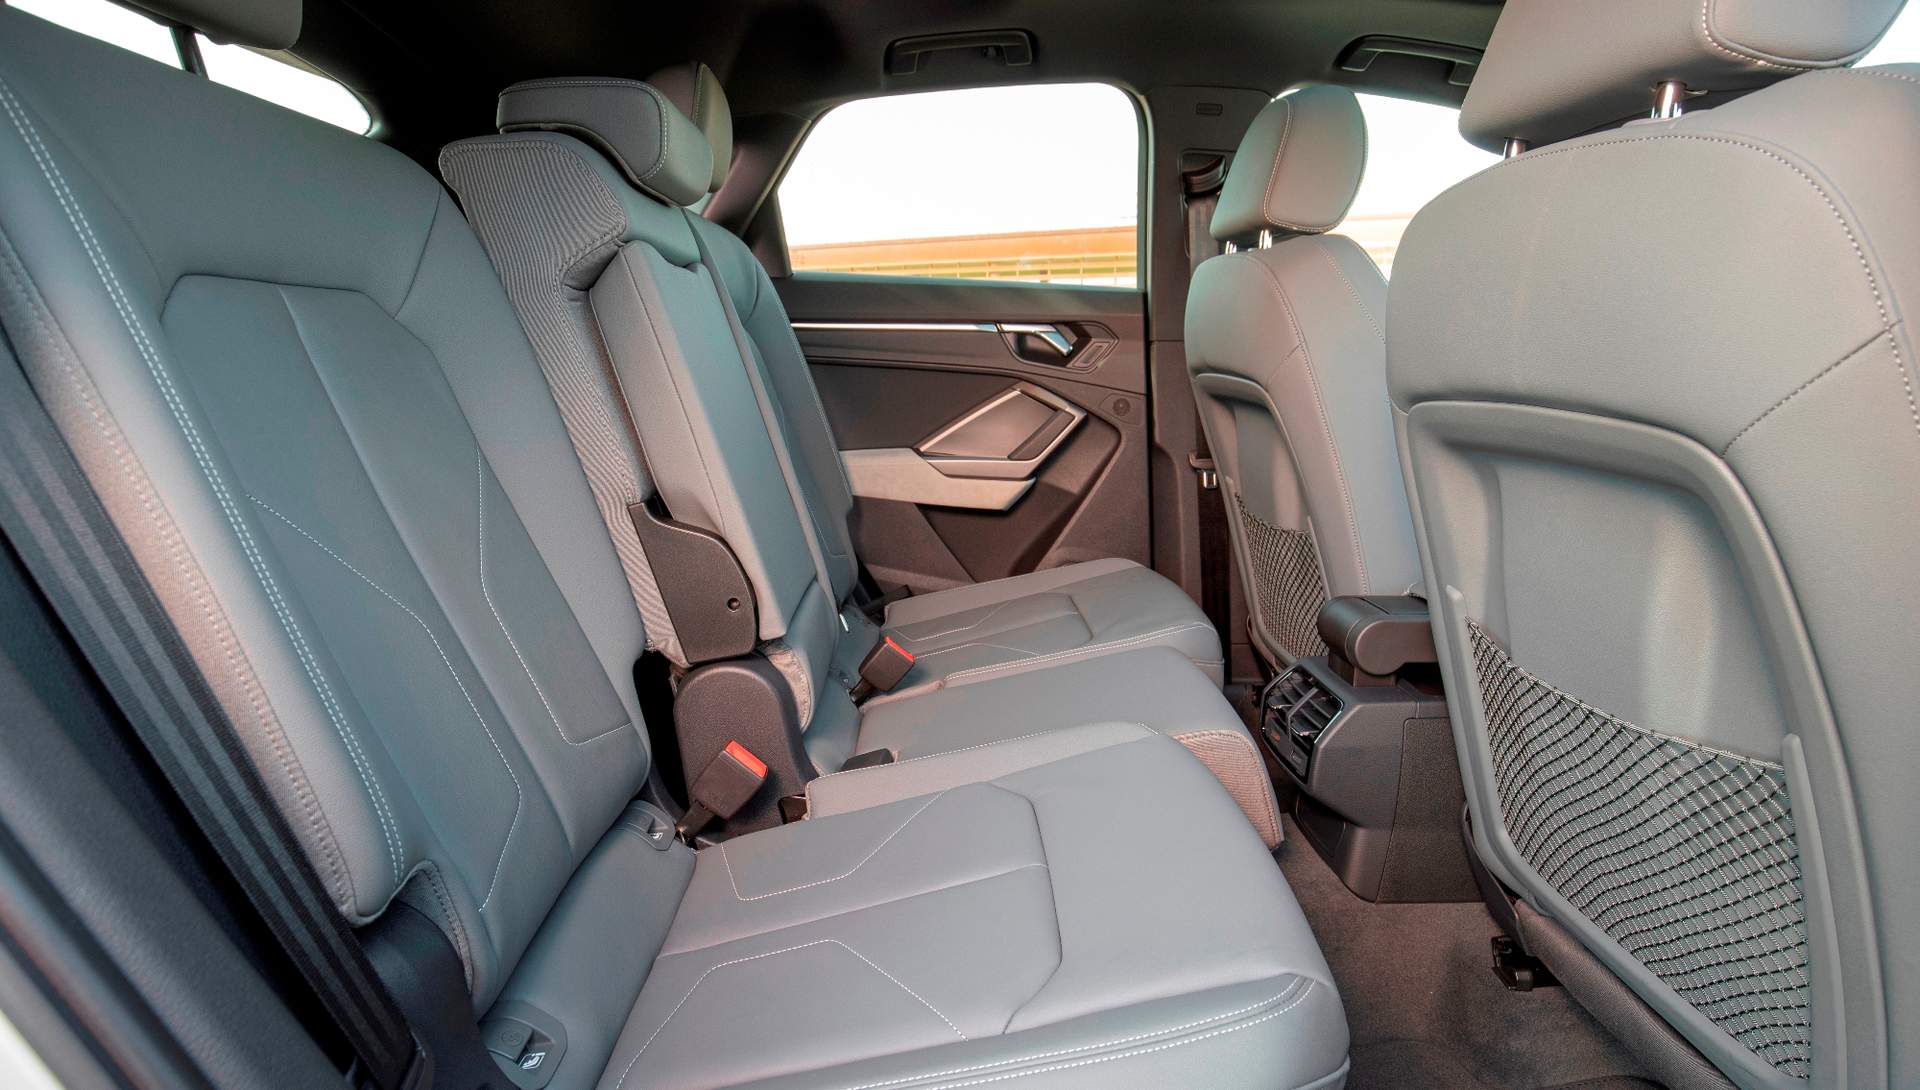 Al poder desplazarse longitudinalmente  13 cm los asientos traseros se puede modular tanto el volumen del maletero como el espacio disponible para las piernas de los pasajeros.